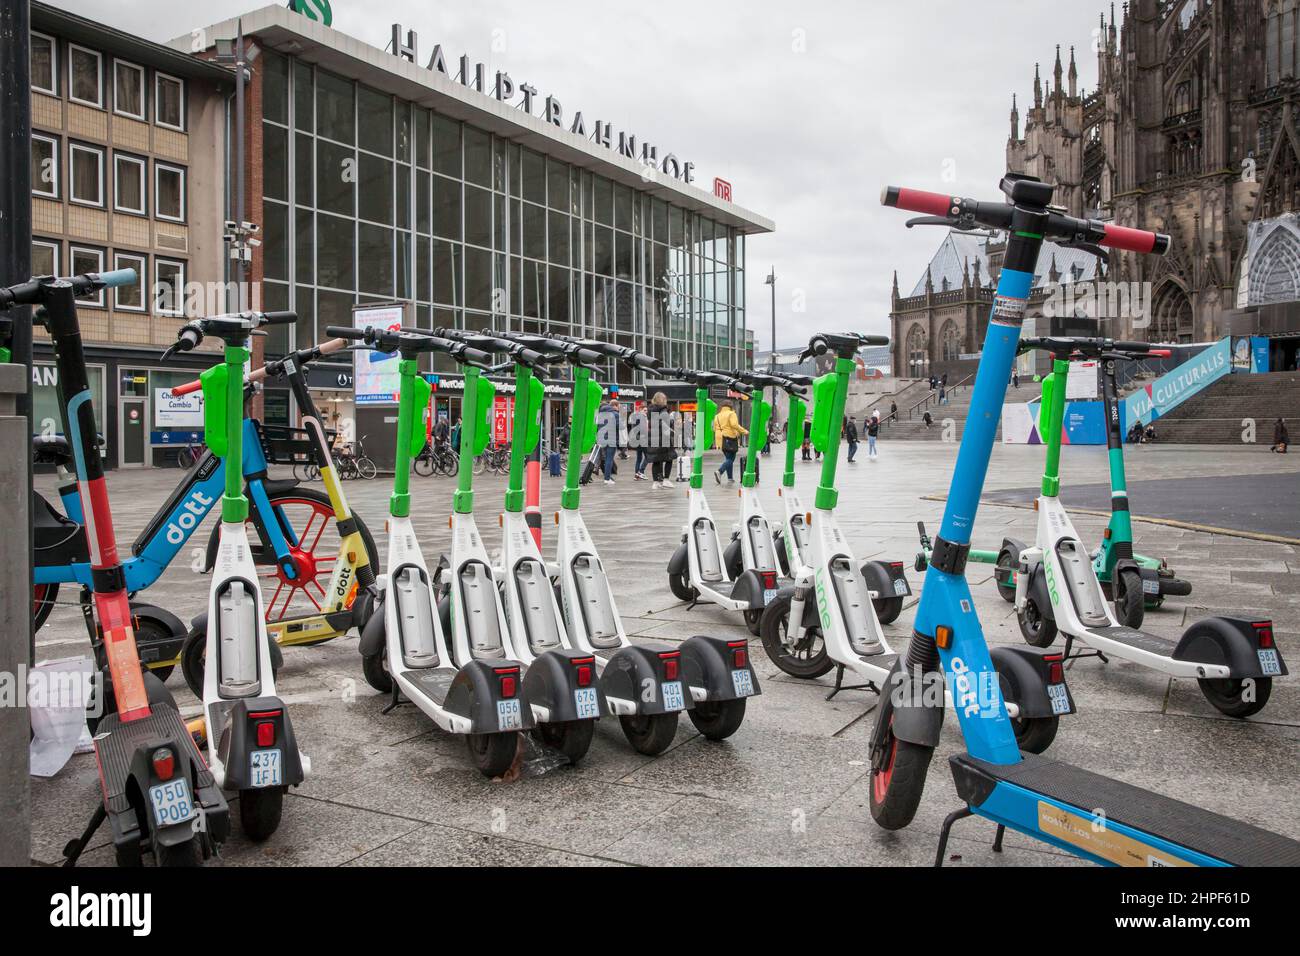 Parkplatz für Elektroroller vor dem Hauptbahnhof, Köln, Deutschland. Parkflaeche für Elektroscooter vor dem Hauptbahnhof, Köln, Deutsch Stockfoto